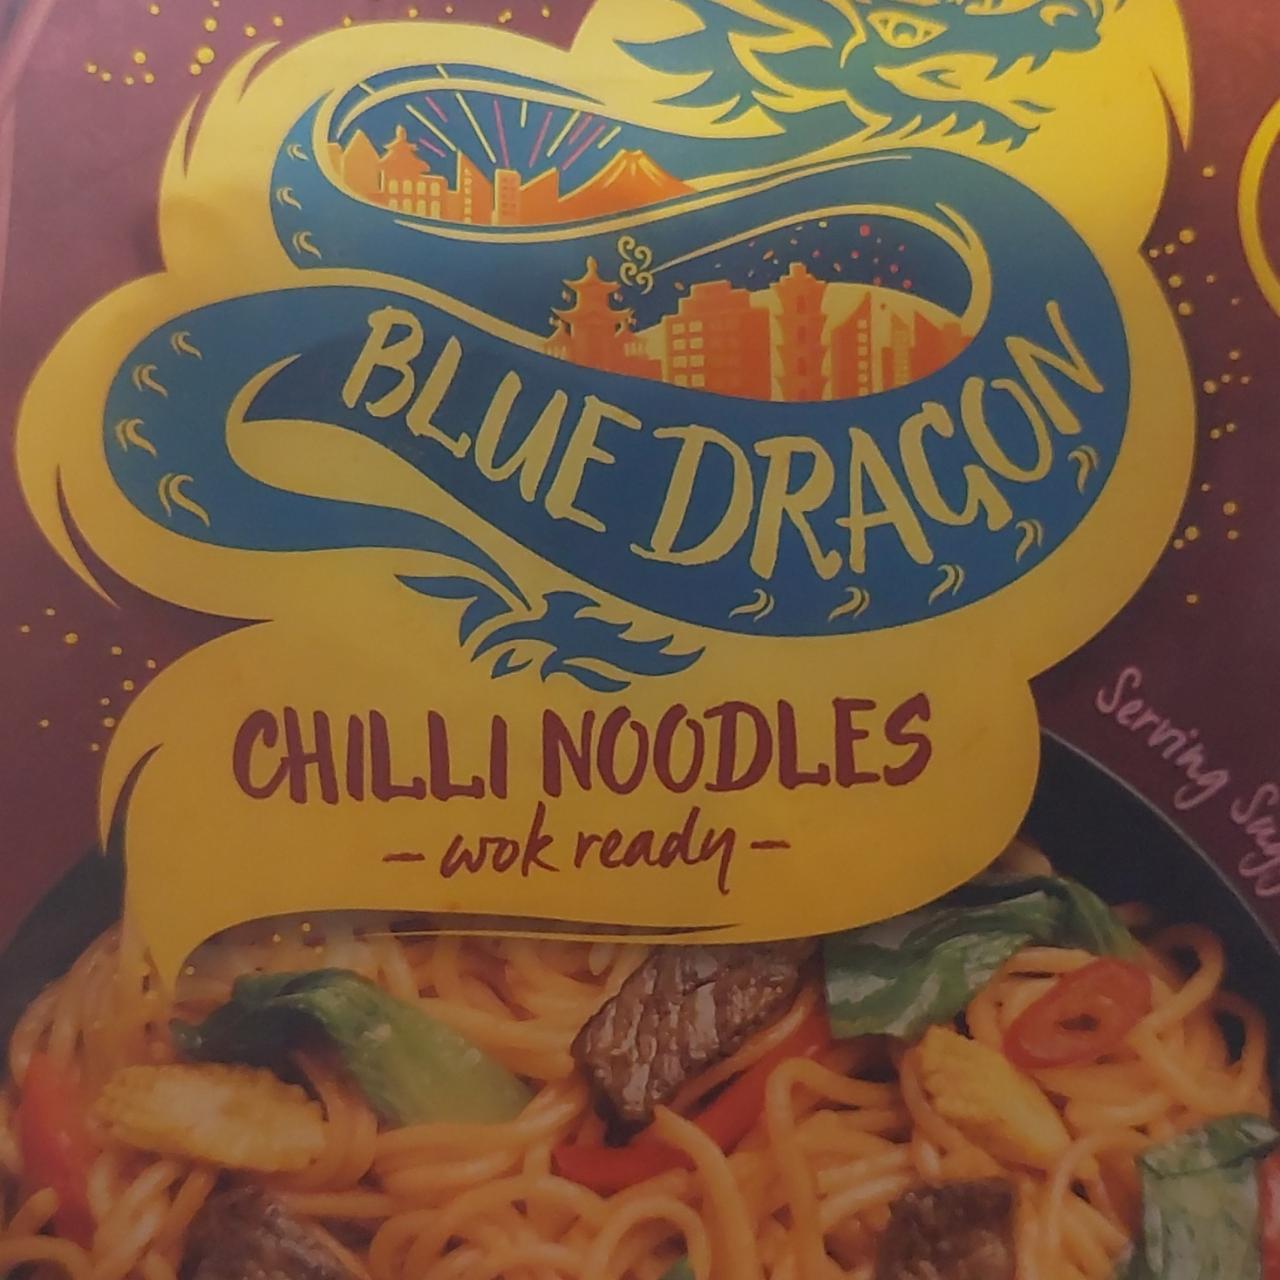 Fotografie - chilli noodles Blue Dragon